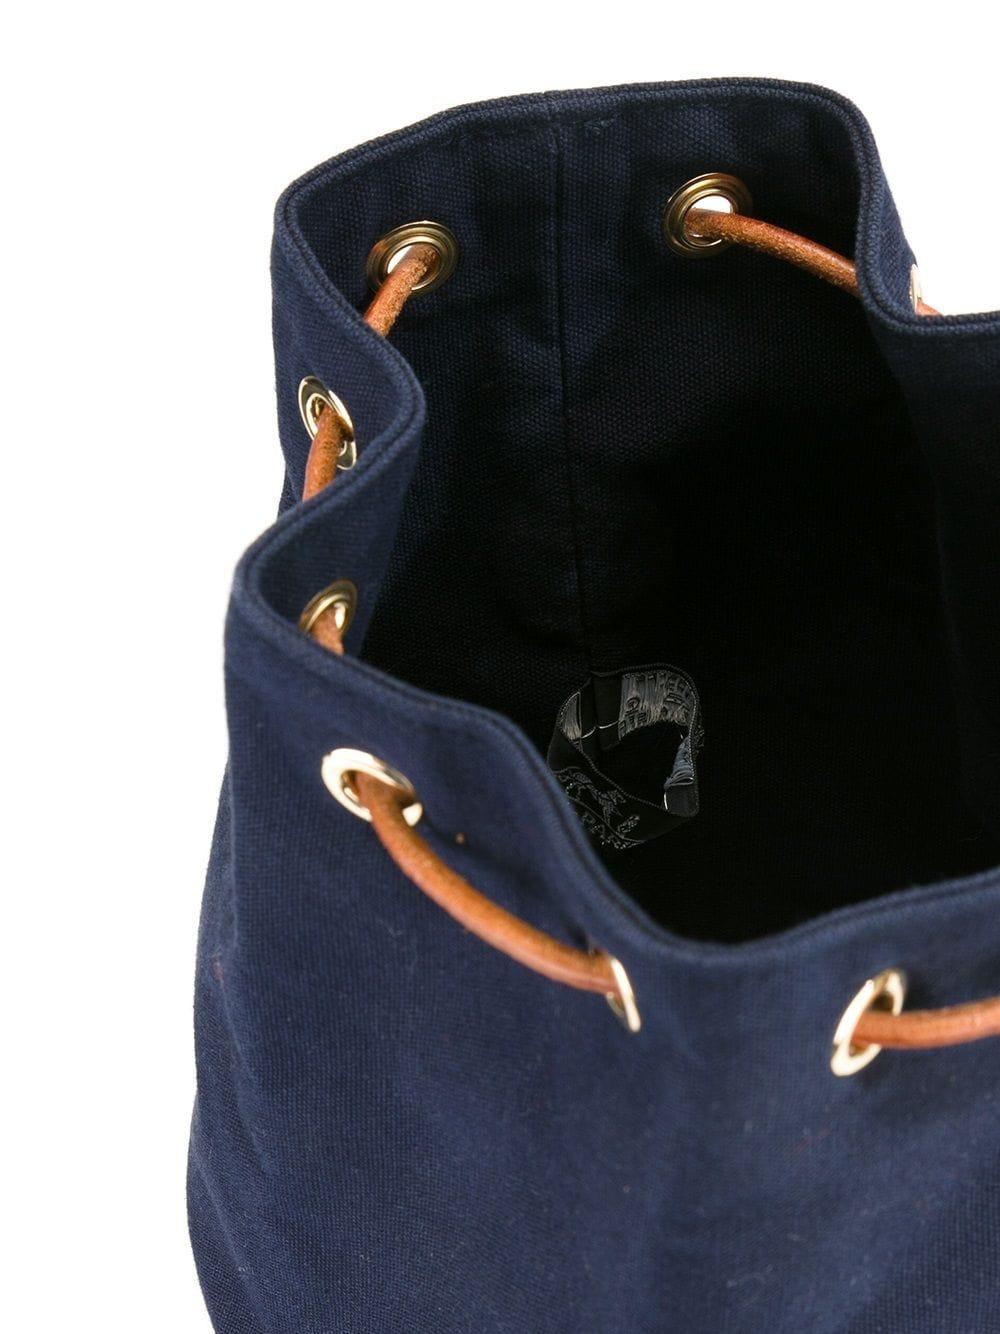 Women's or Men's Navy Hermes Matelot cotton Tote Bag